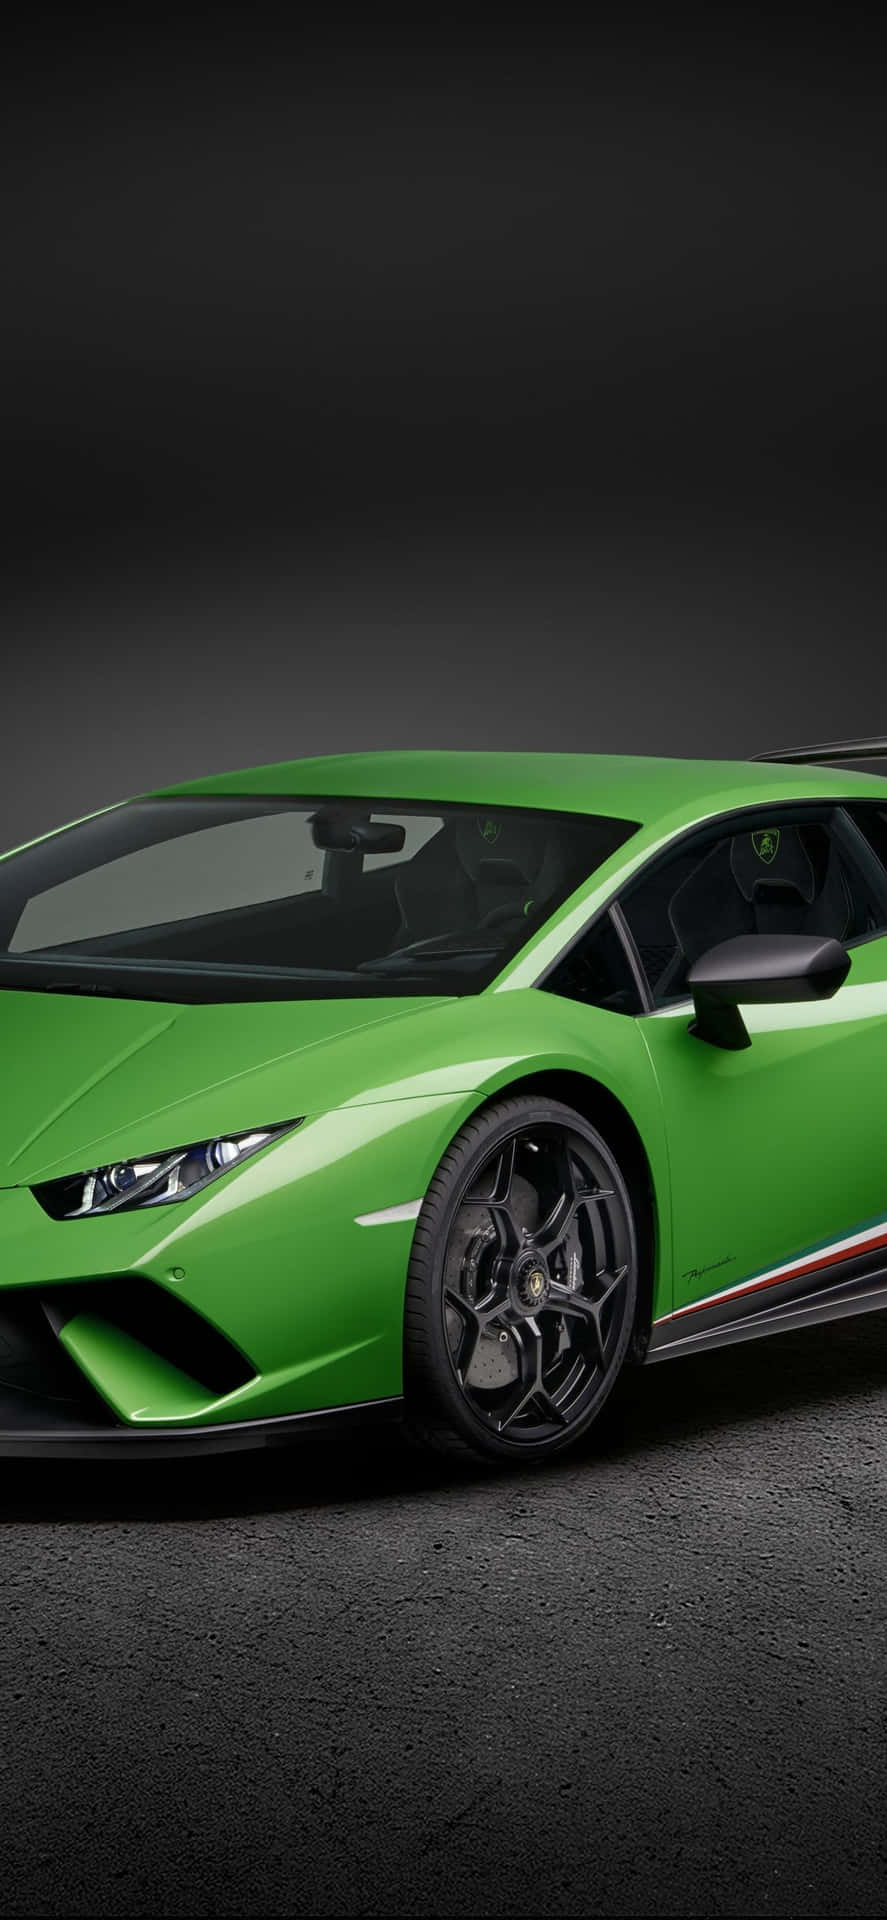 Portail Tuo Viaggio Al Livello Successivo Con Un Iphone Lamborghini Verde. Sfondo